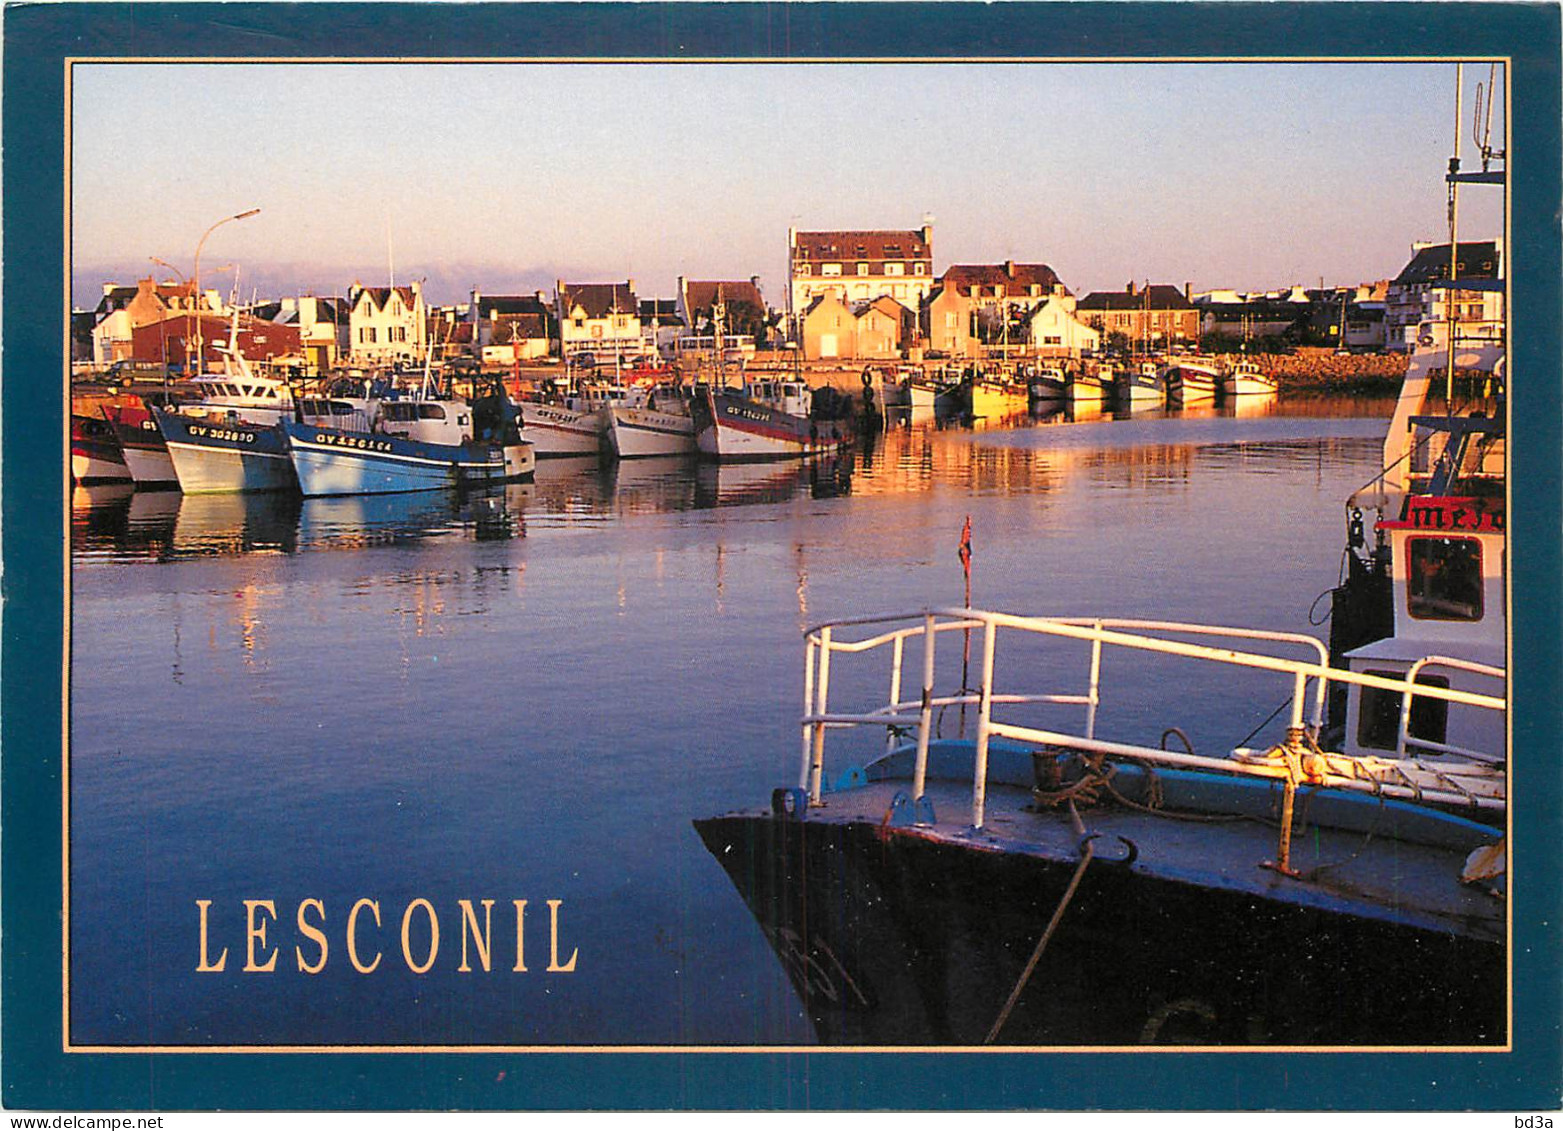 29 - LESCONIL - Lesconil